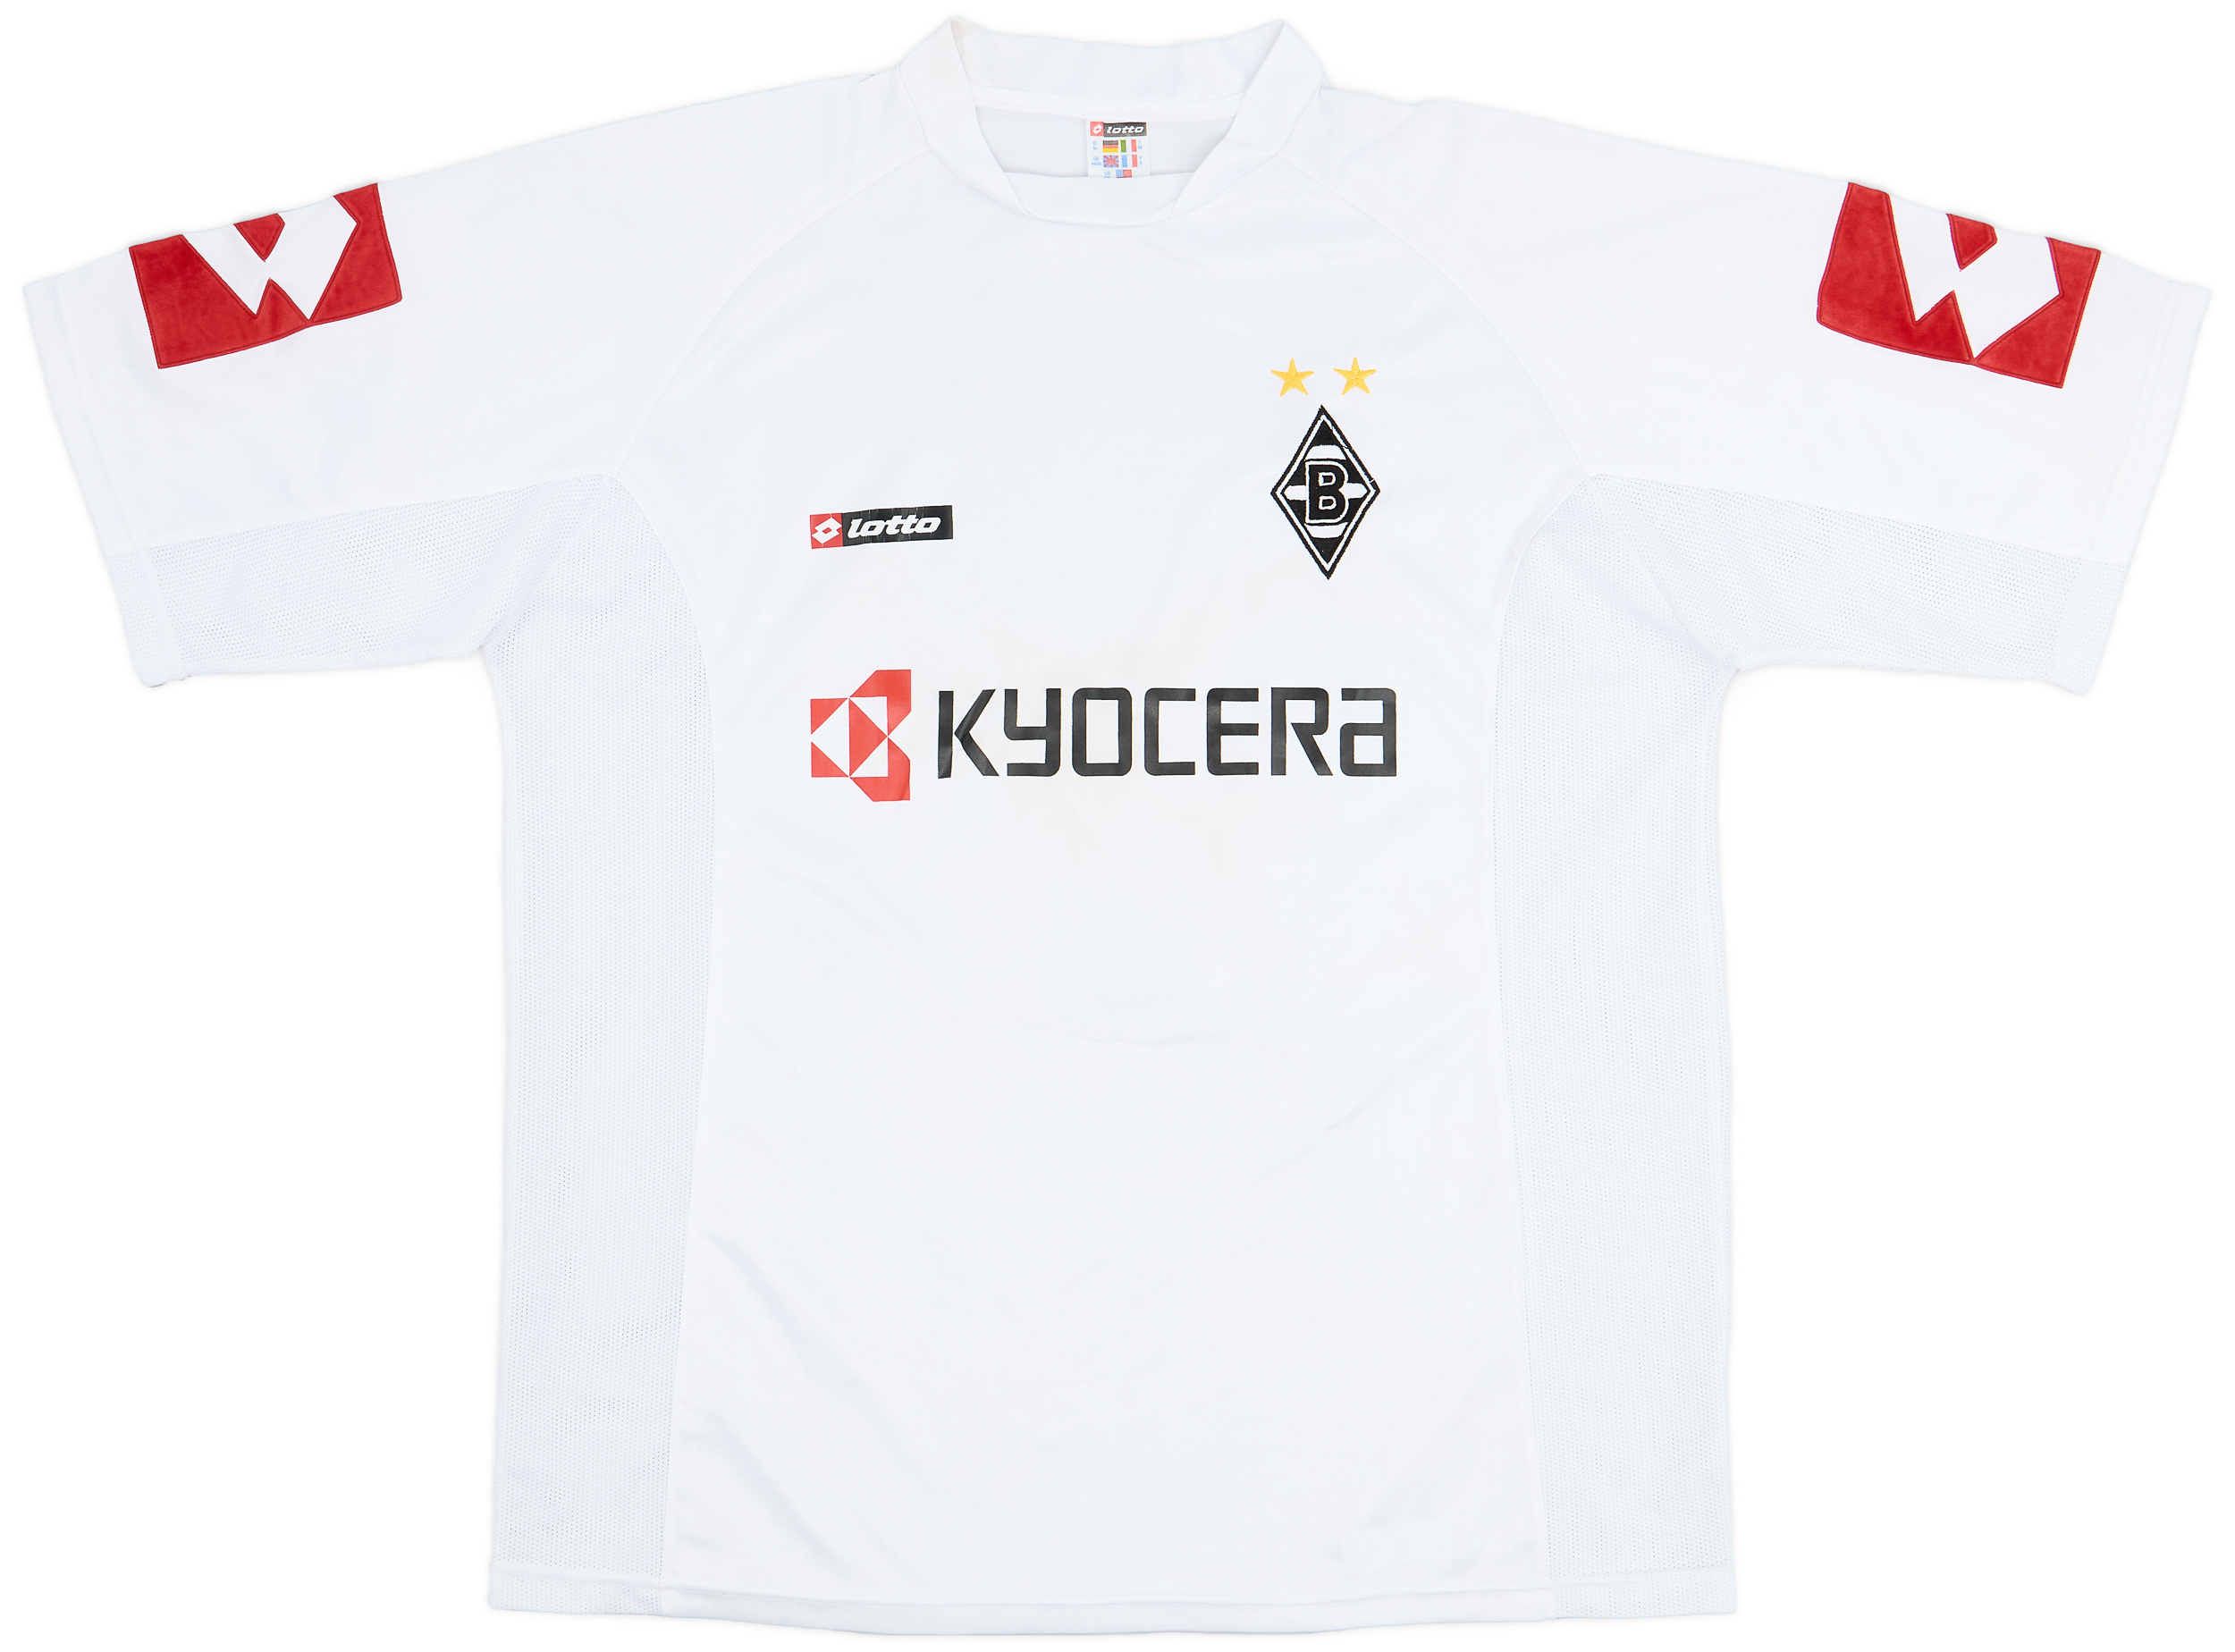 2005-06 Borussia Monchengladbach Home Shirt - 6/10 - (/)